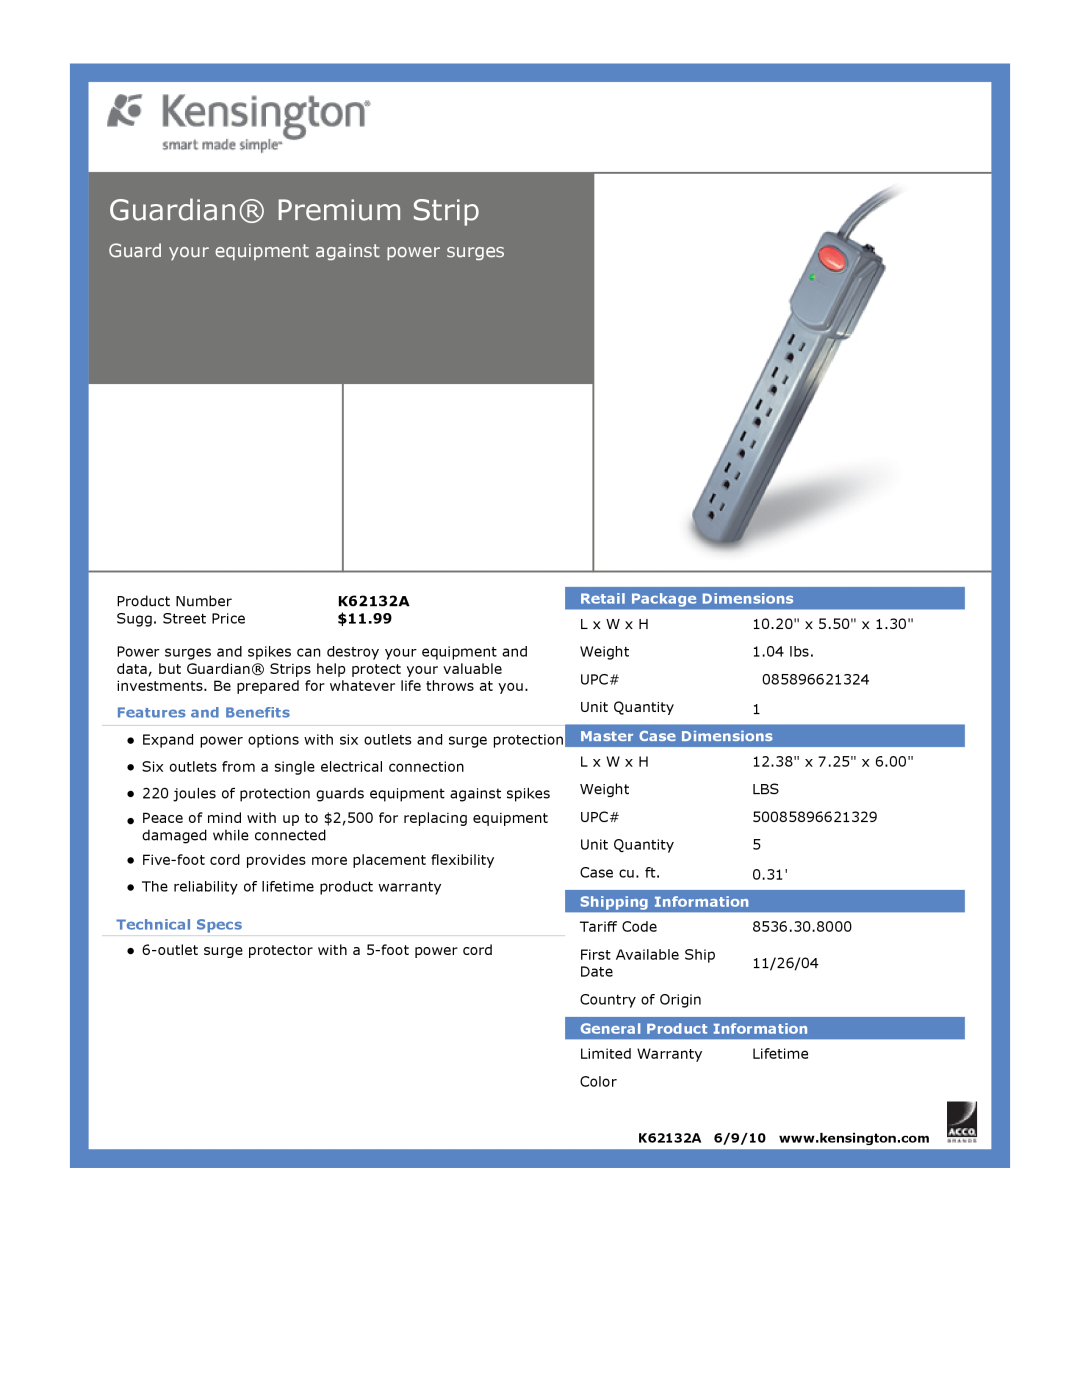 Kensington EU64325 Guardian Premium Strip, Guard your equipment against power surges, $11.99, Features and Benefits 